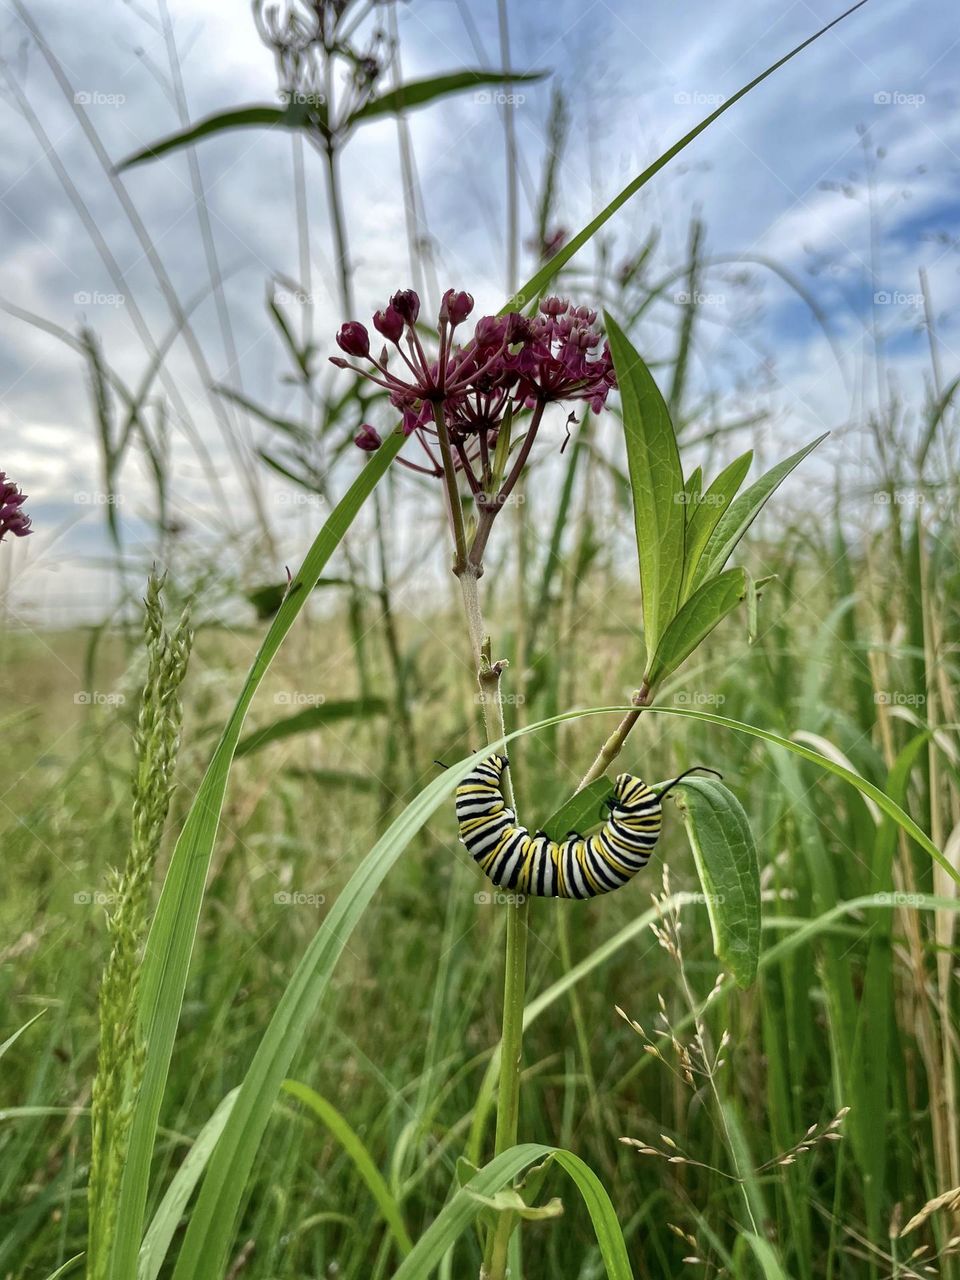 Monarch caterpillar on milkweed 